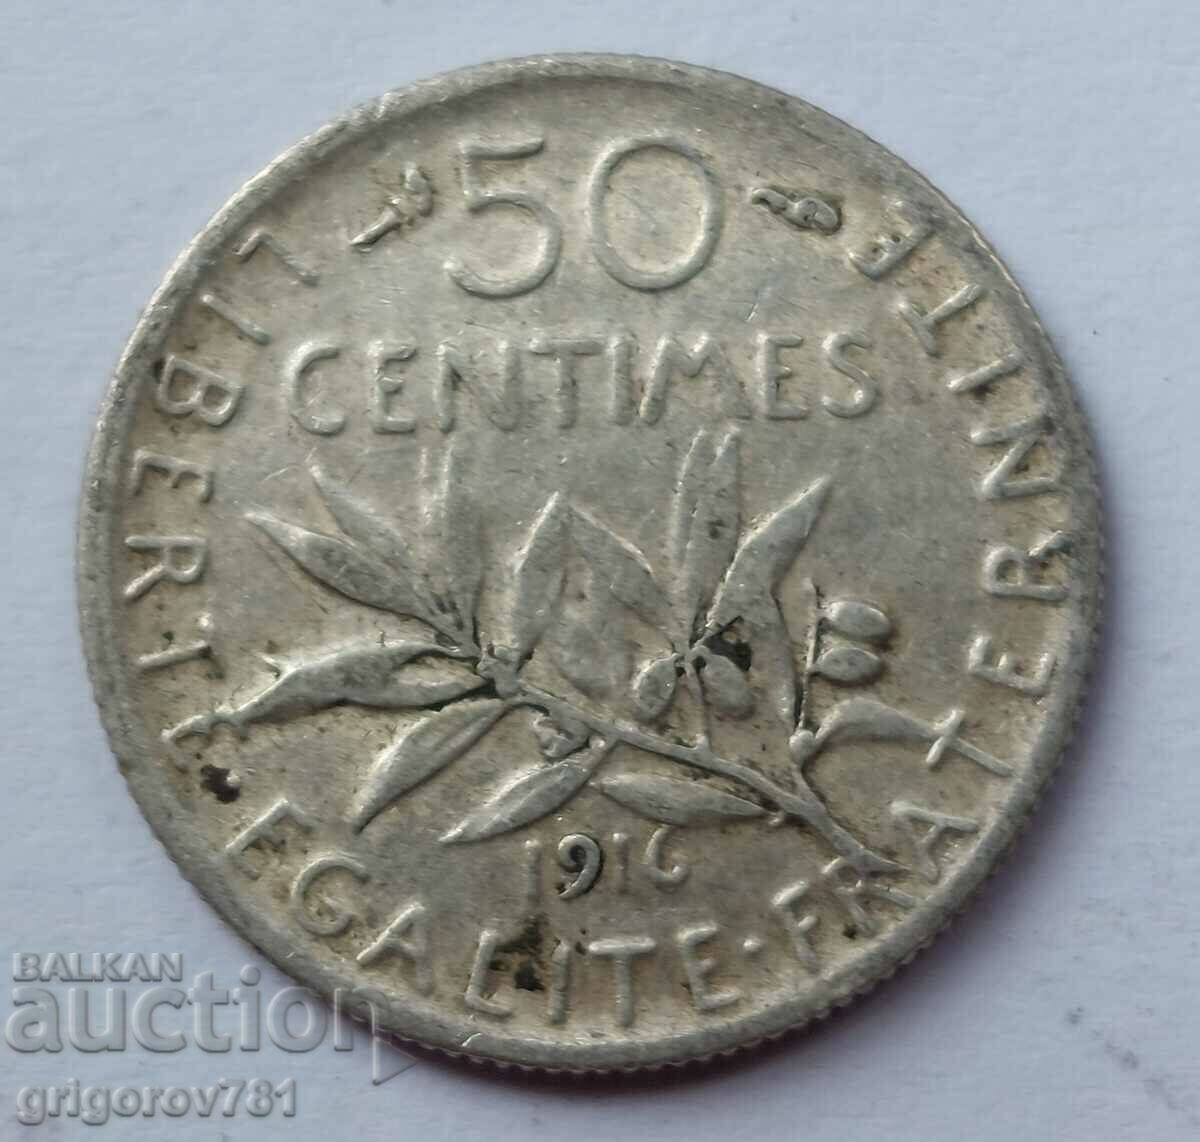 Ασημένιο 50 εκατοστά Γαλλία 1916 - ασημένιο νόμισμα №55